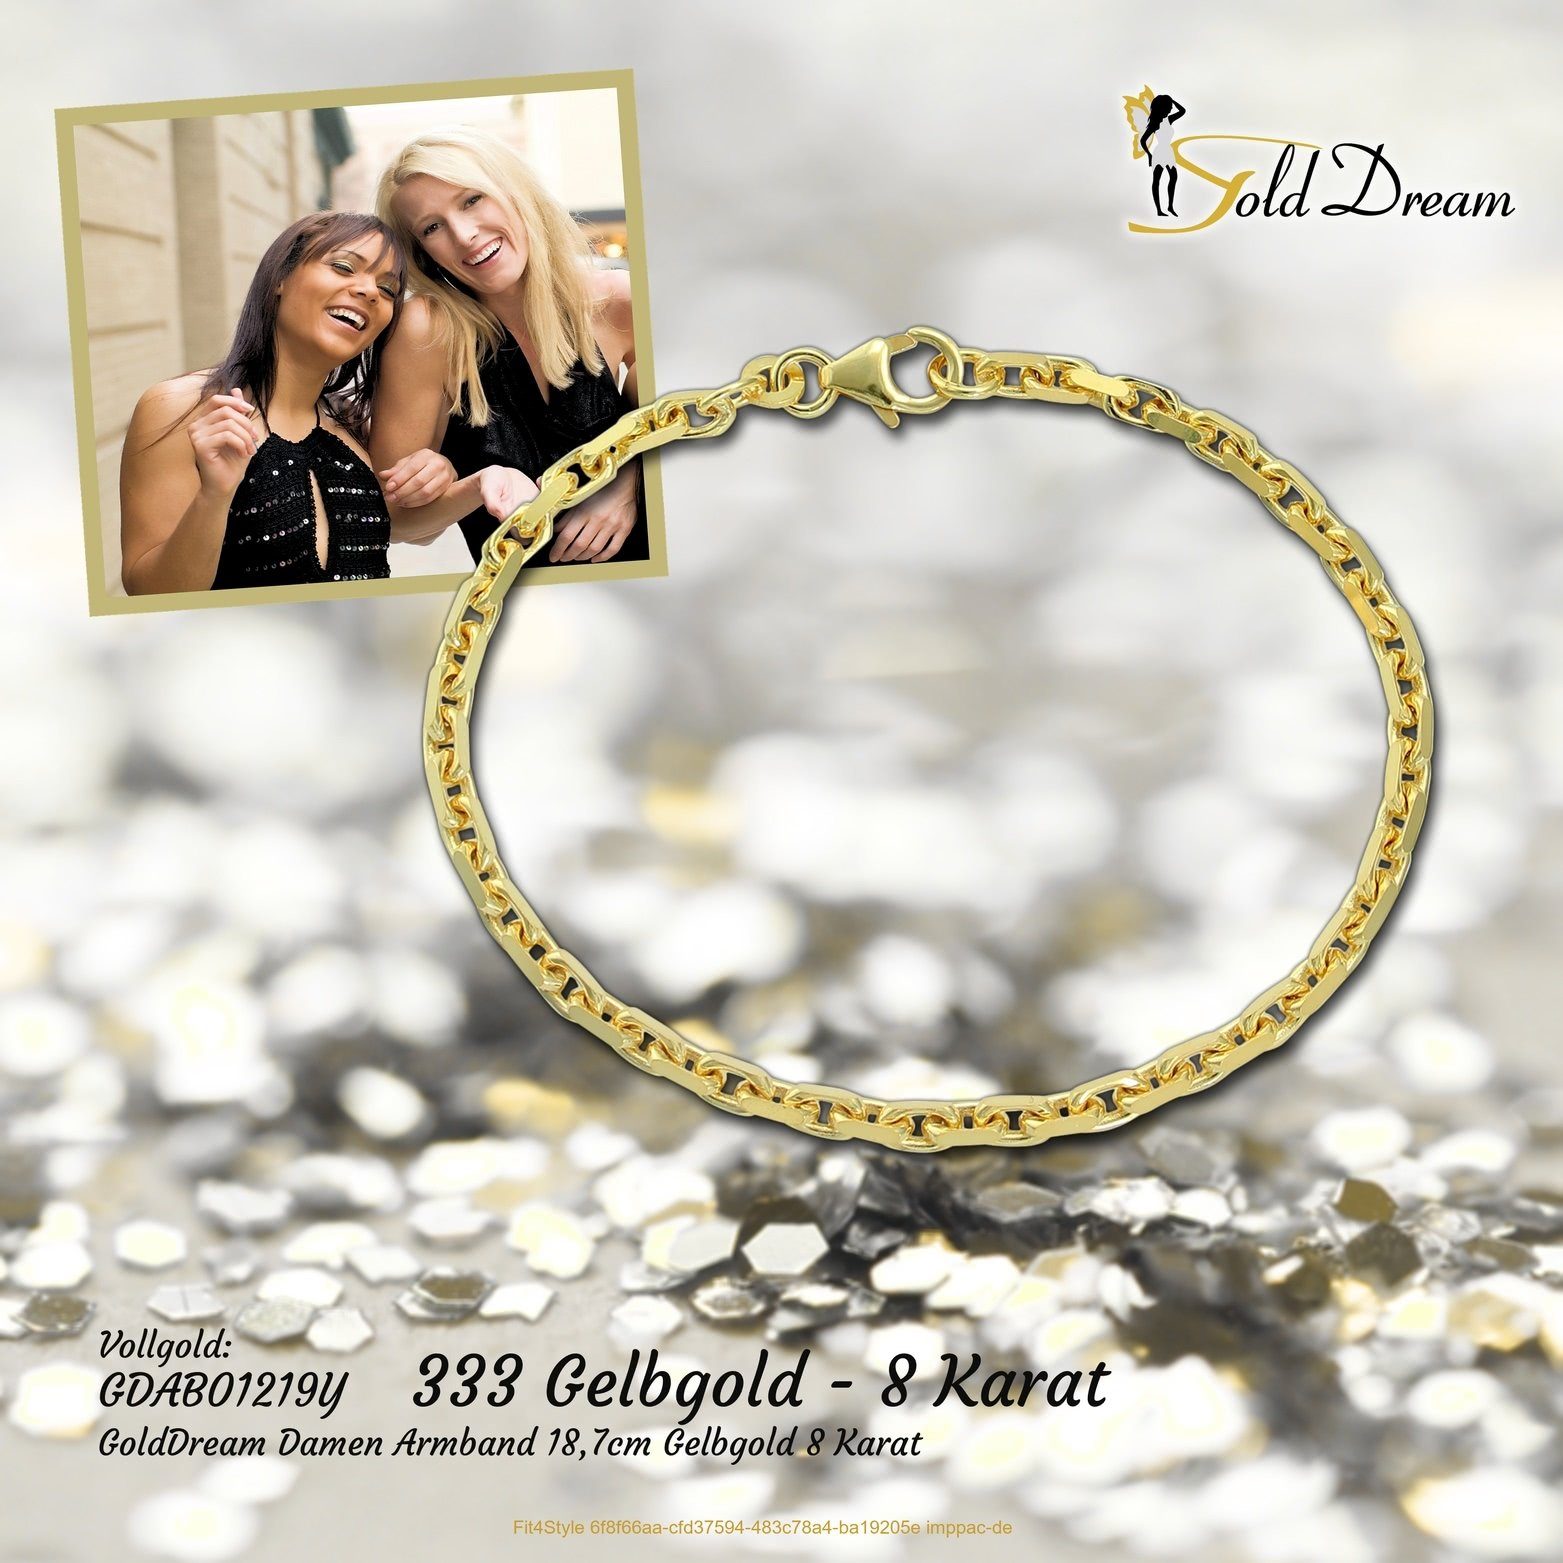 Damen Gelbgold GoldDream GoldDream Armband (Armband, Armband), Armband 8K 333er Echtgold Echtgold, 18,7cm, Goldarmband Gelbgold